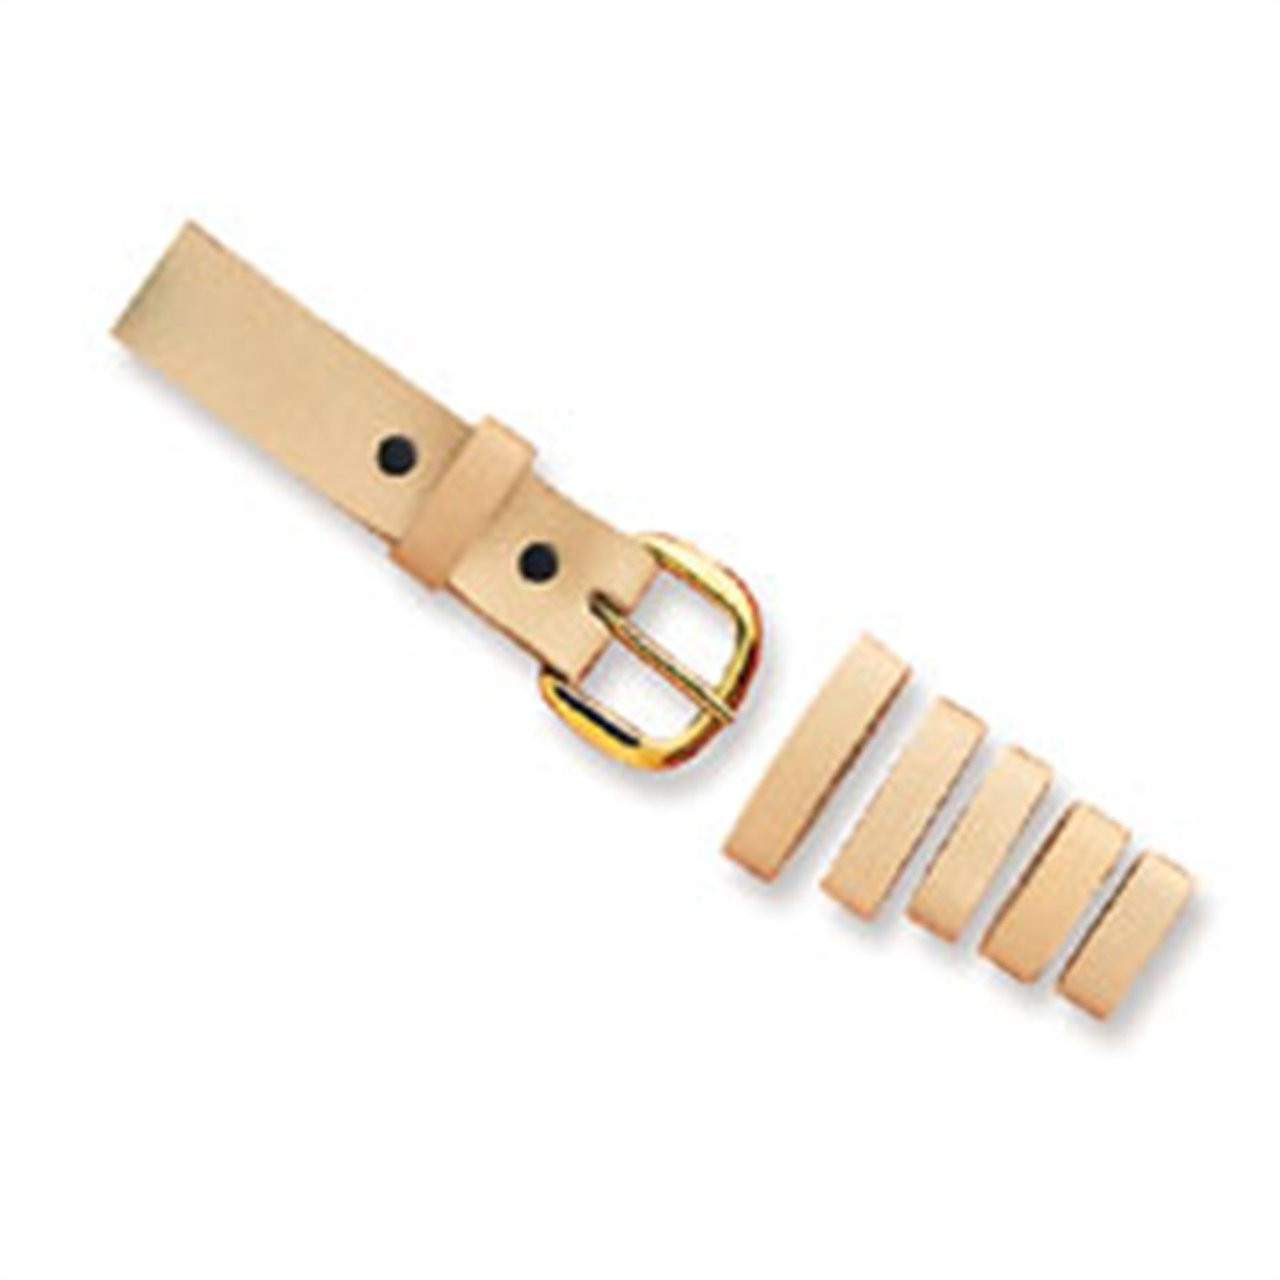 Didiseaon 3Pcs leash leather belt for men belts heavy duty belt keepers  belt strap retainers wide straps keepers belt loop keeper belt keepers  holders